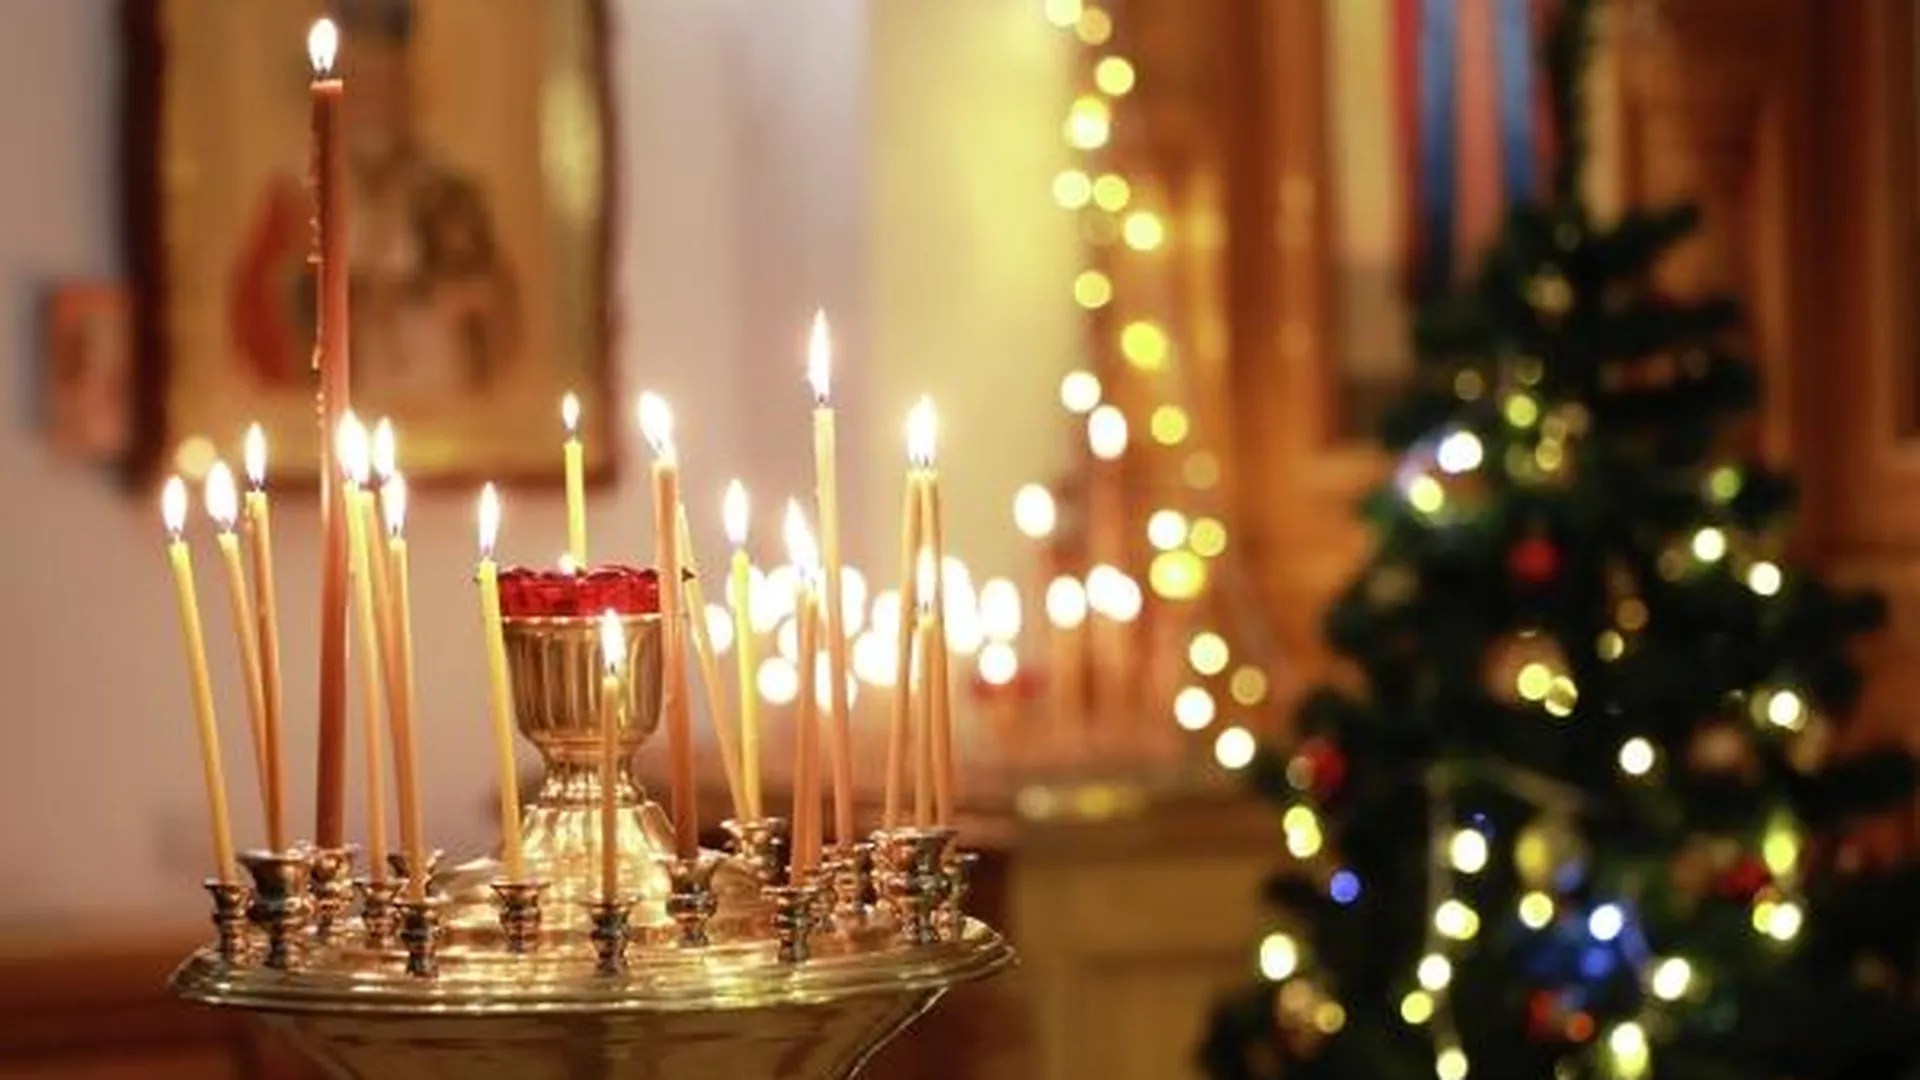 Метель, свадьбы и птицы. Православные отметят Ефимов день 2 января